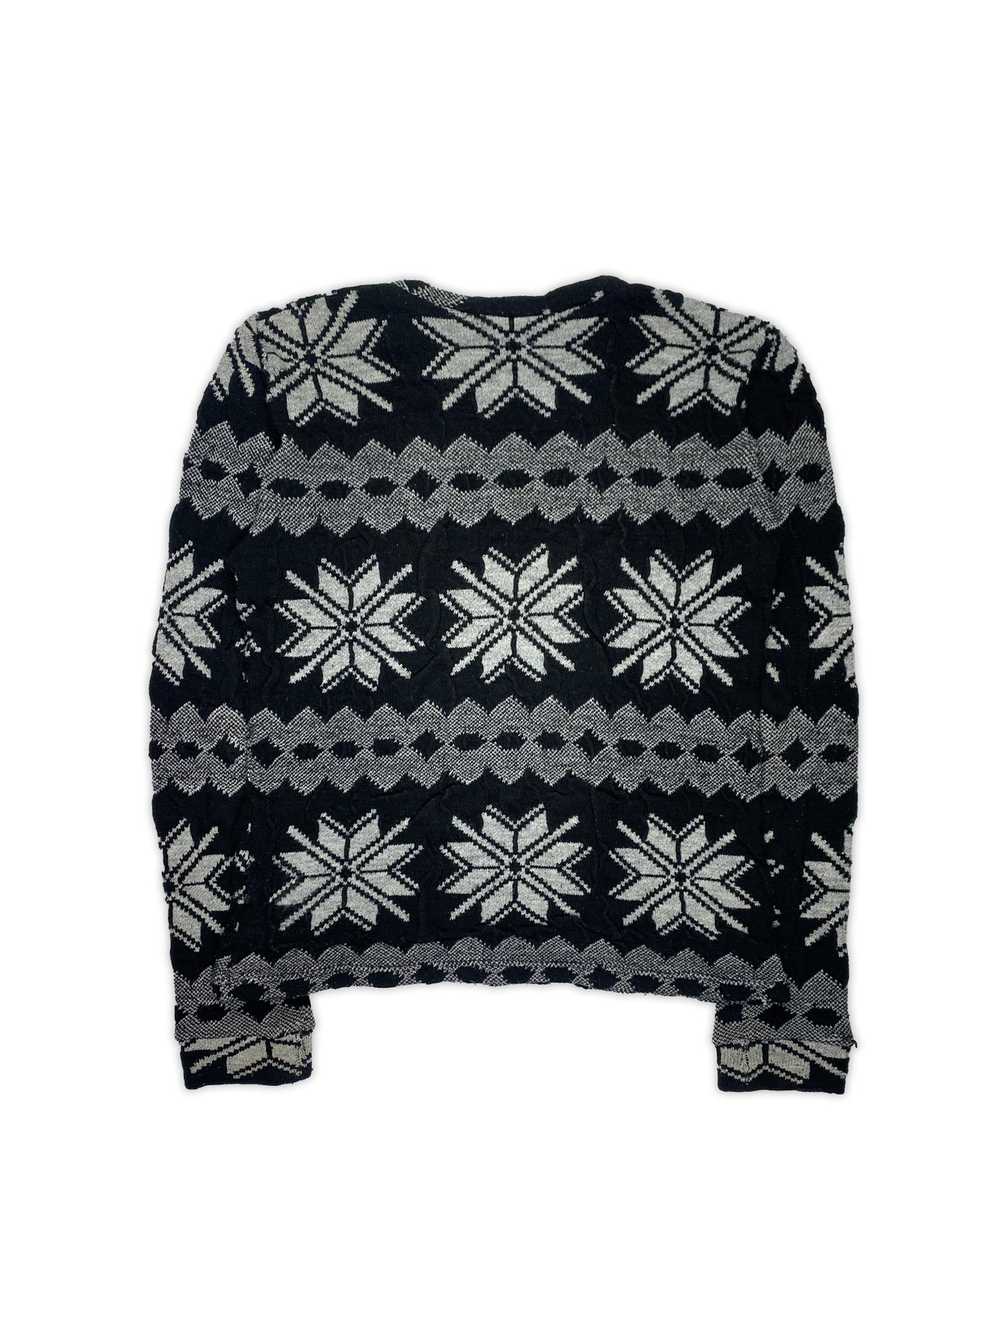 Raf Simons AW03 'Closer' Instartia Sweater - image 3